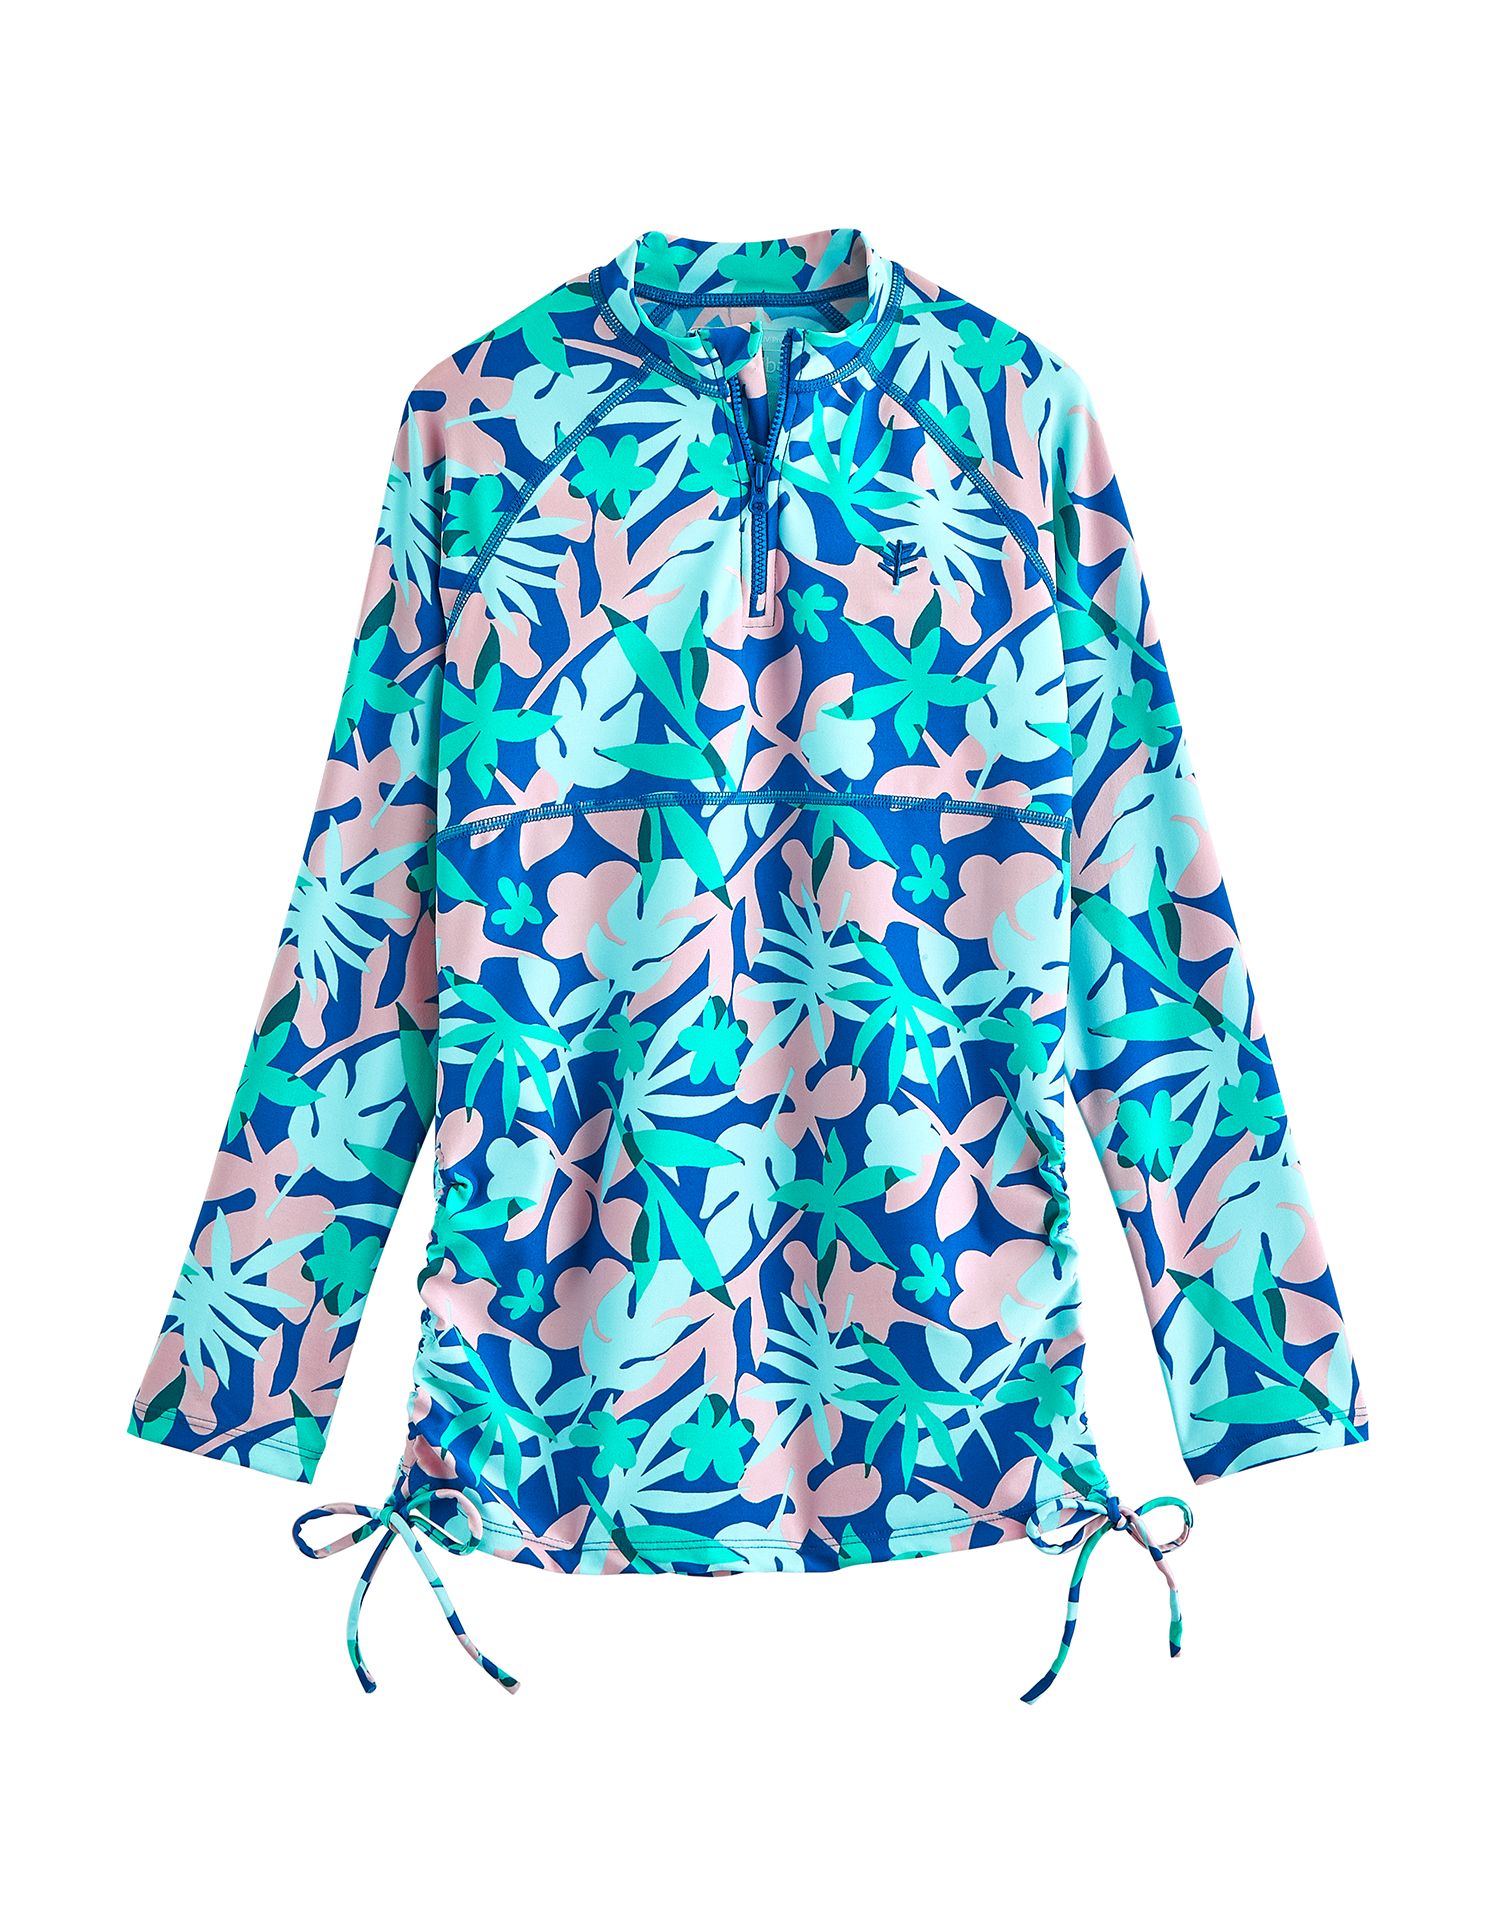 Coolibar - UV Zwemshirt voor meisjes - Longsleeve - Lawai Ruche - Marlijn Blauw/Bloemen